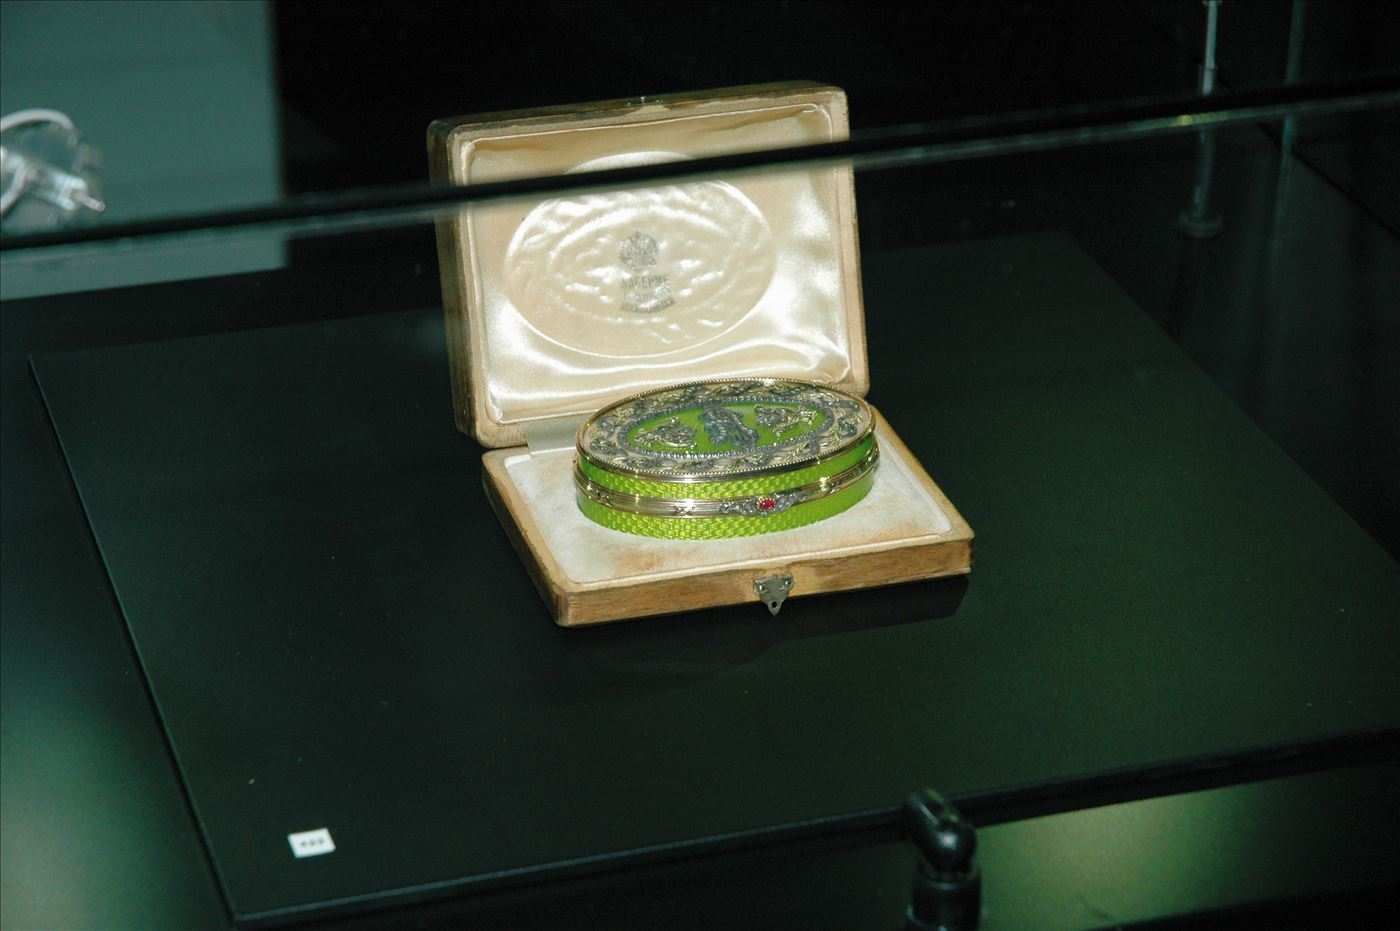 גלרייה - תערוכת תכשיטים במוזיאון - אבנר צופיוף 31.5.2006, 8 מתוך 22